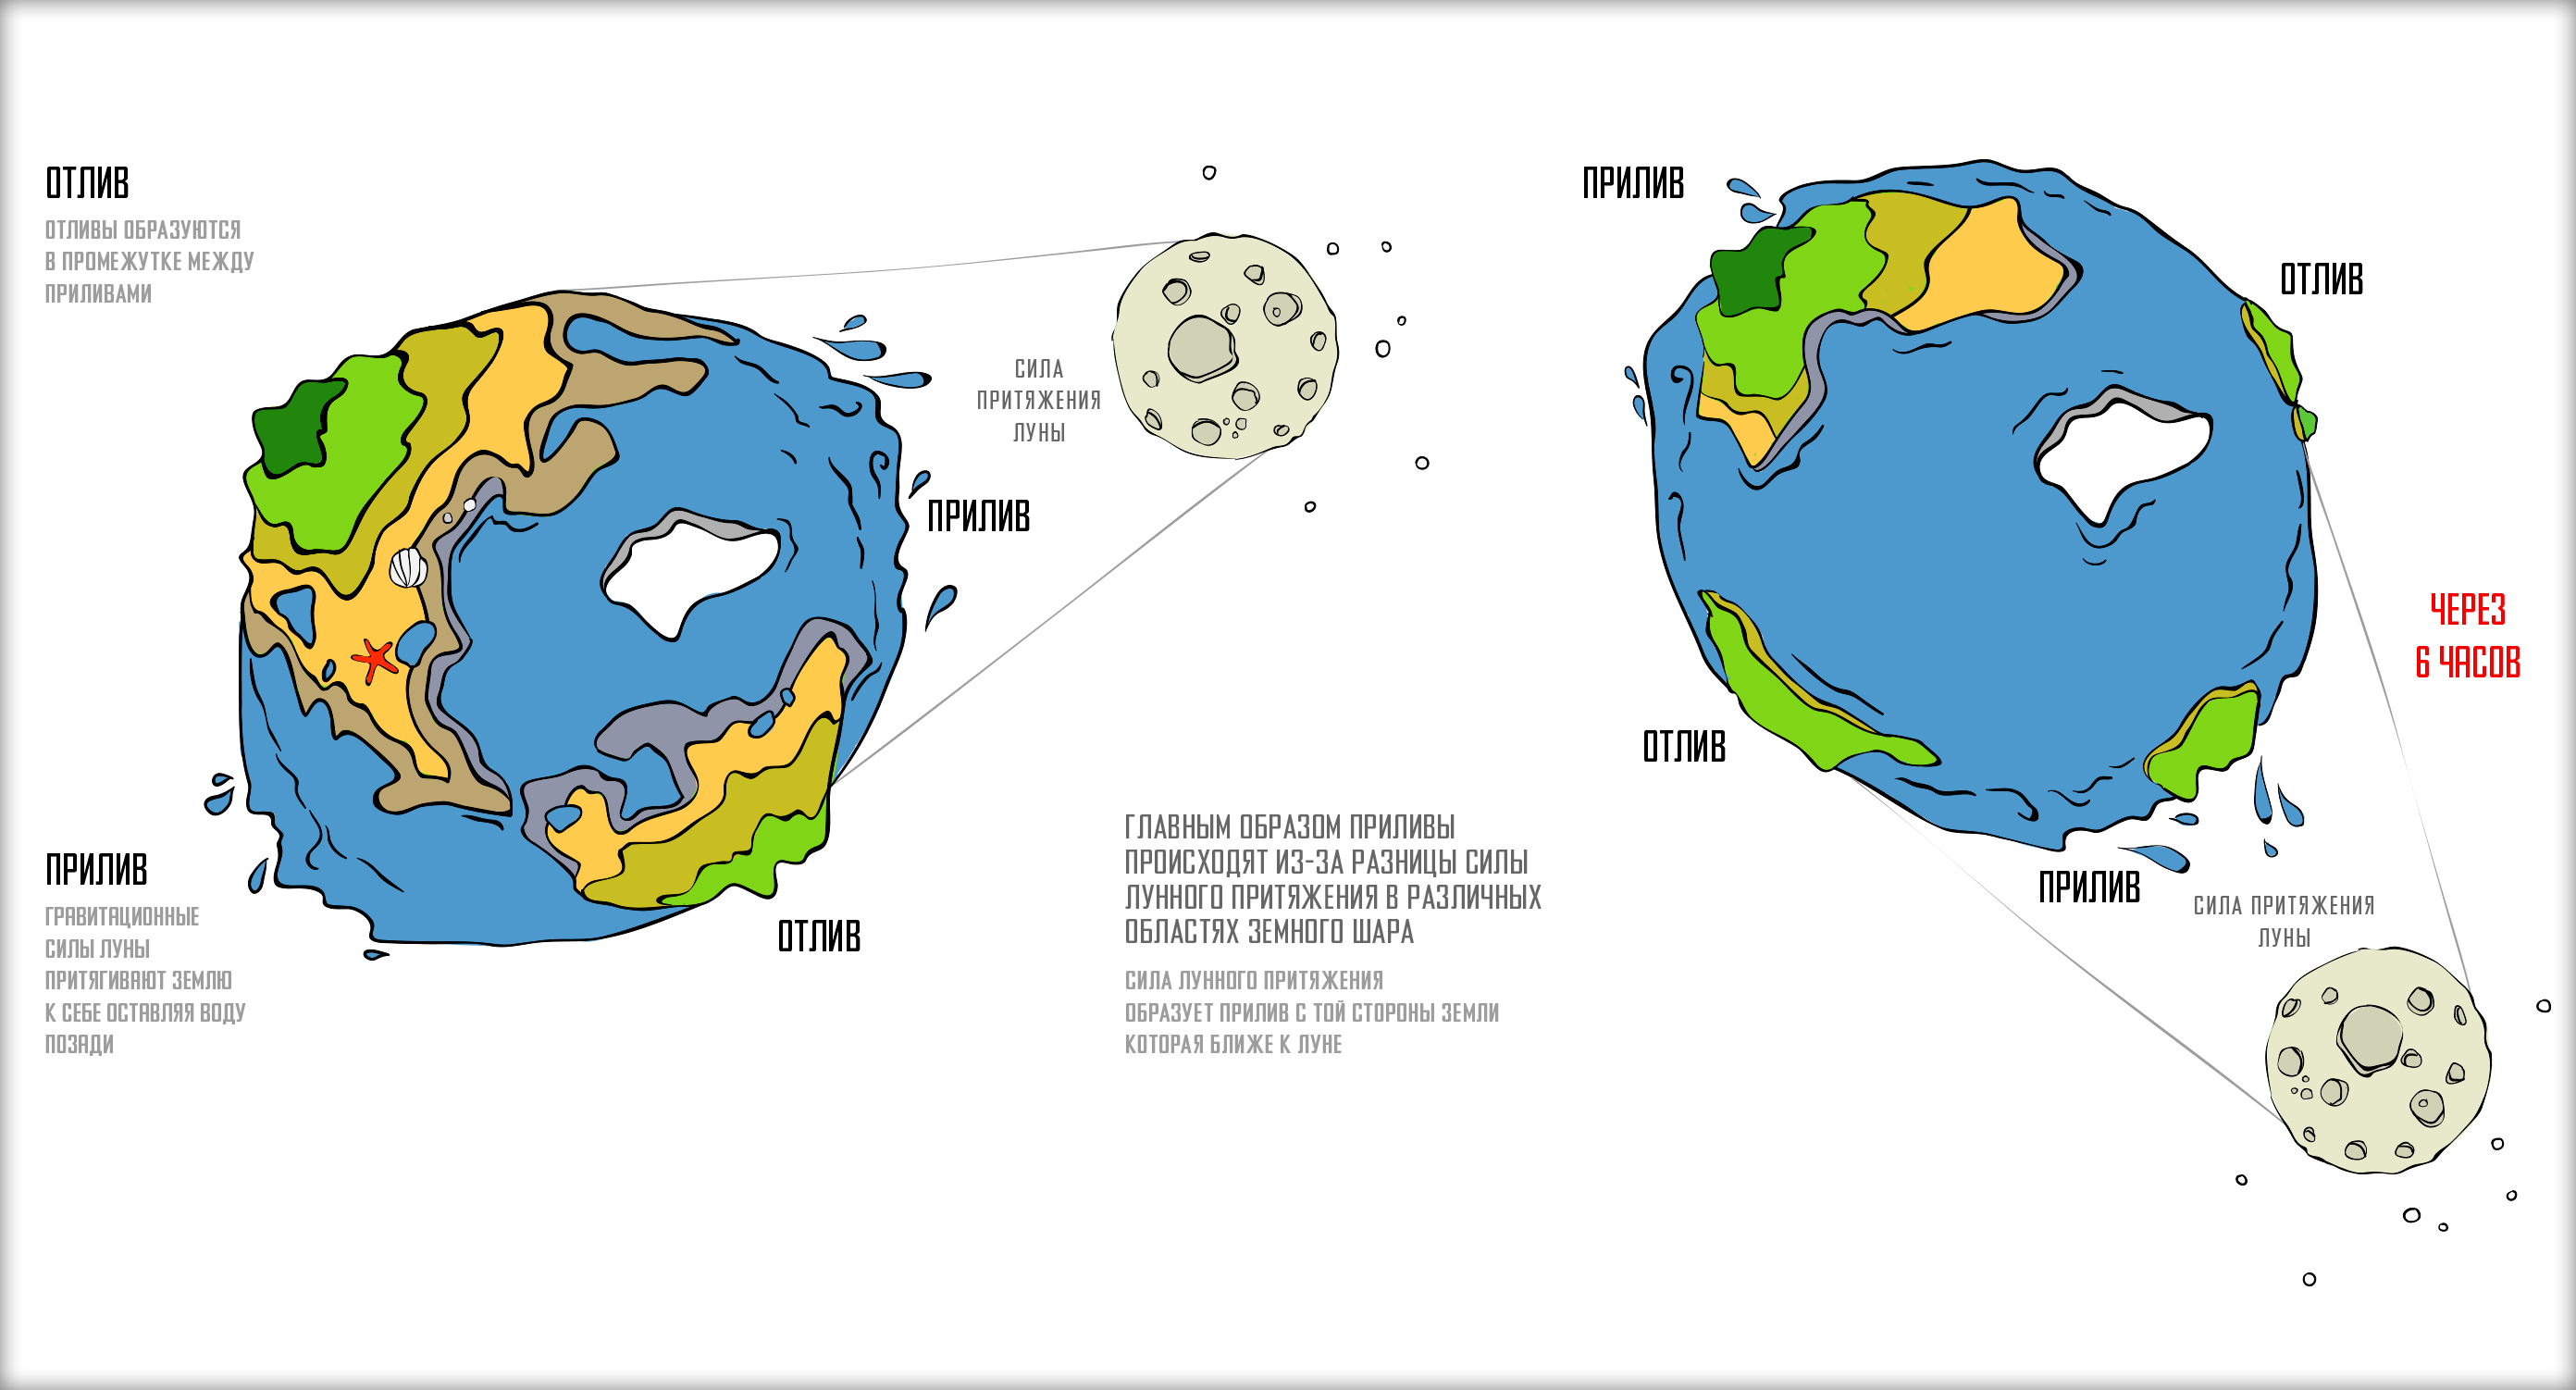 Приливы океана причины. Земля Луна отлив прилив схема. Приливы и отливы Луна схема. Схема образования приливов и отливов. Приливы и отливы влияние Луны схема.